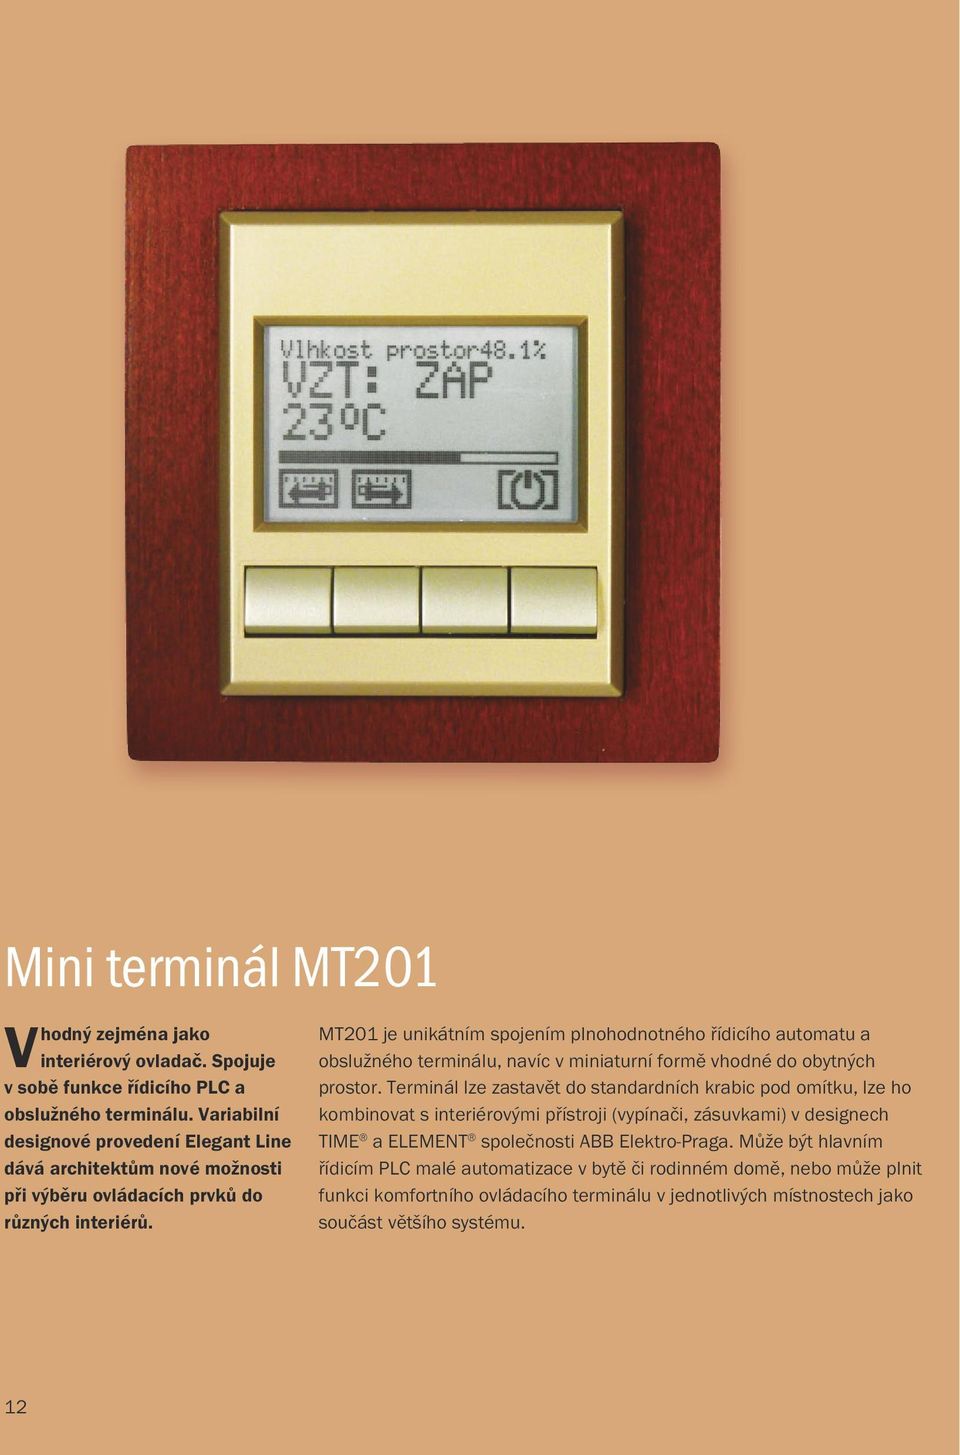 MT201 je unikátním spojením plnohodnotného řídicího automatu a obslužného terminálu, navíc v miniaturní formě vhodné do obytných prostor.